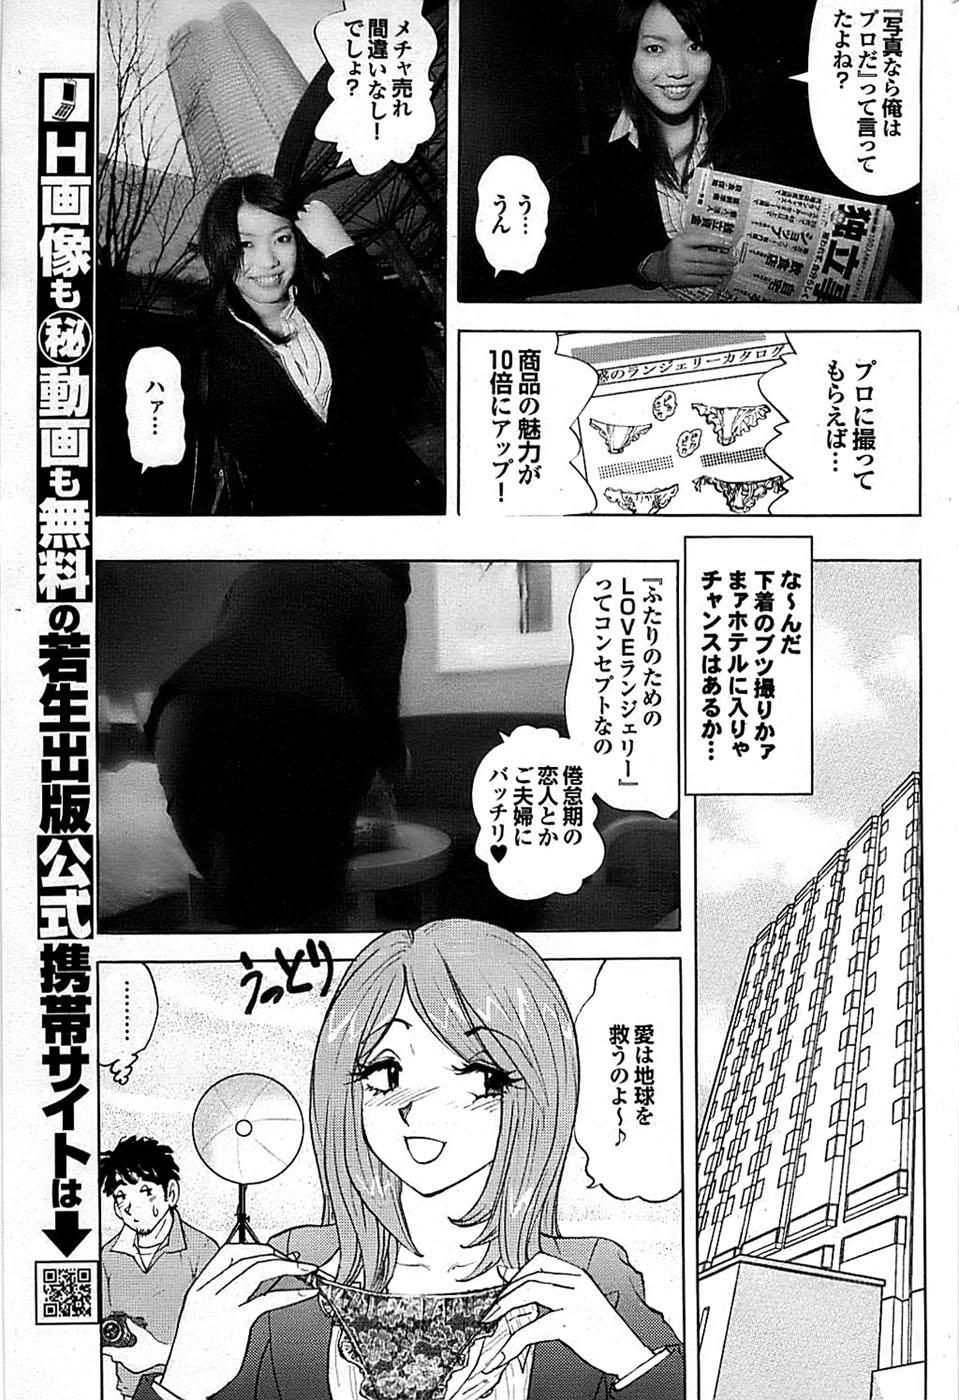 Mitsu-Man 2009-03 Vol. 7 158